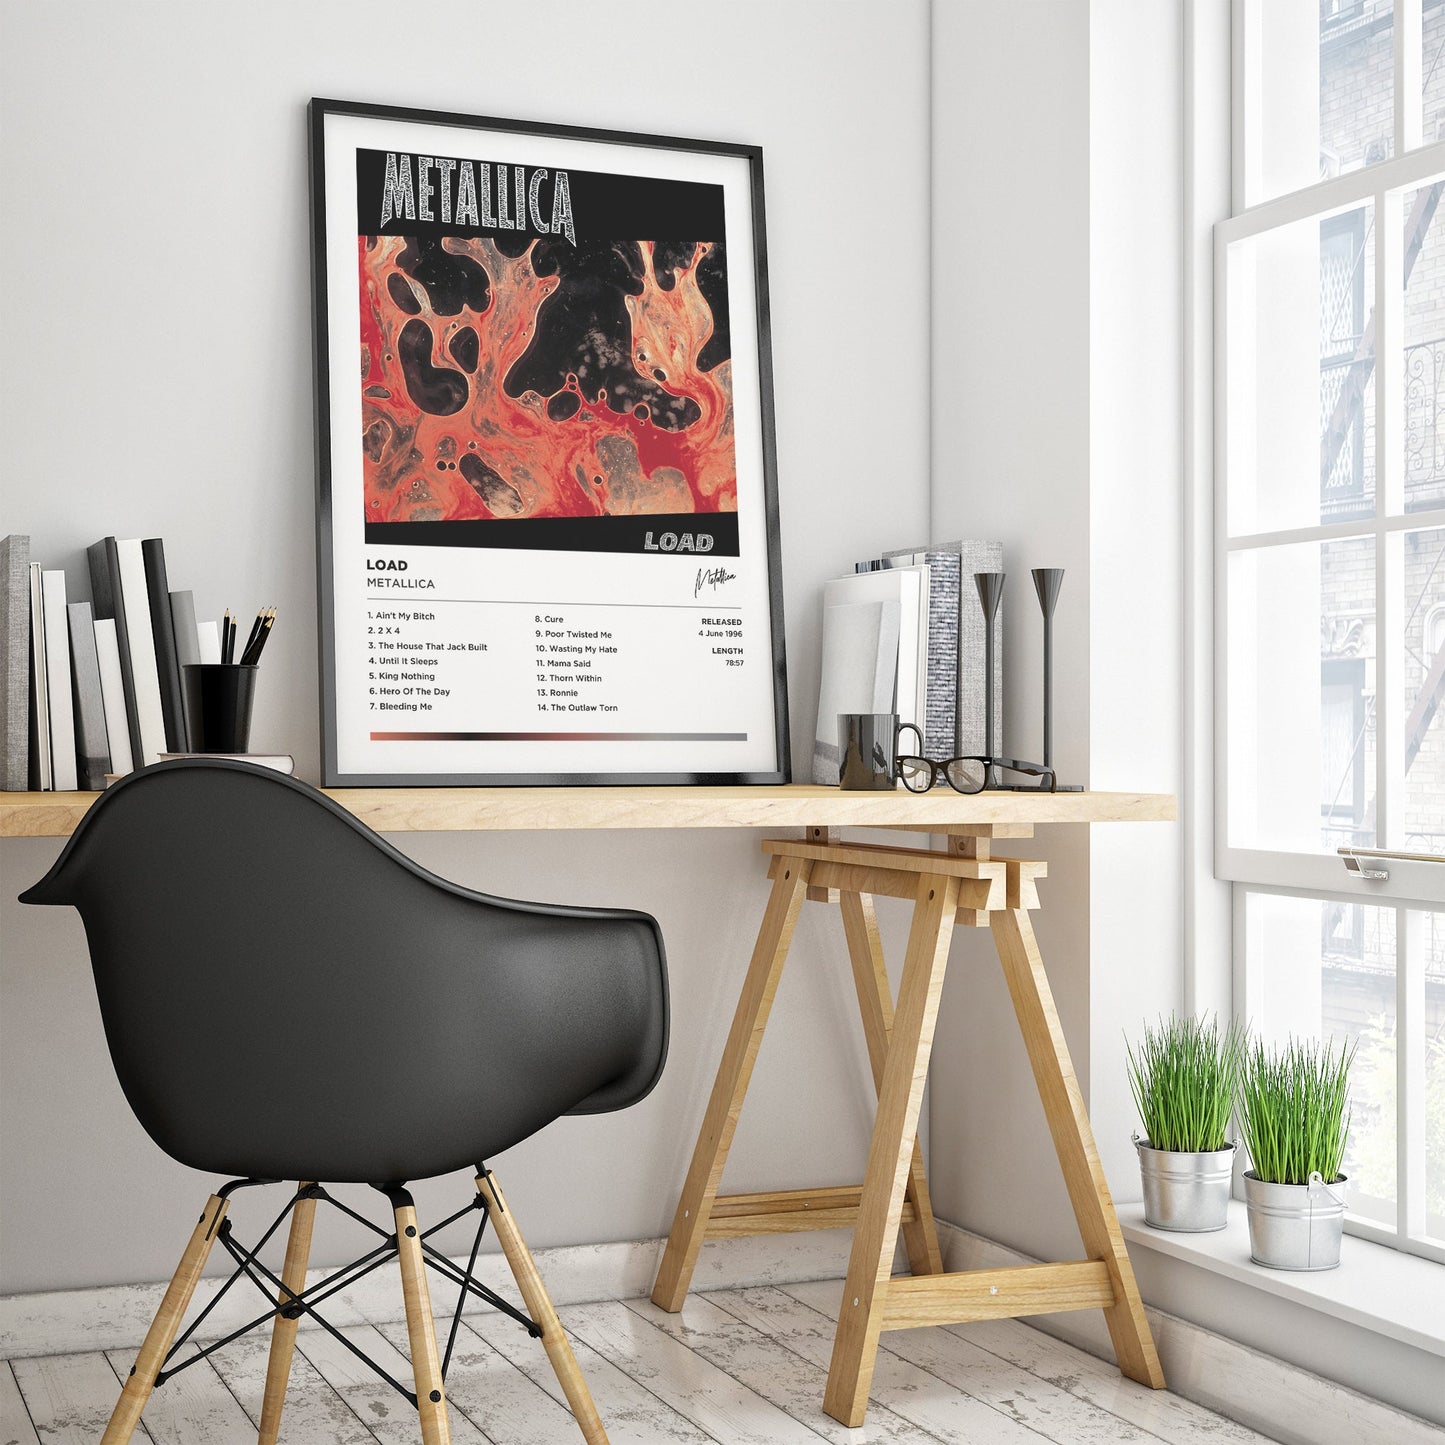 Metallica - Load Framed Poster Print | Polaroid Style | Album Cover Artwork